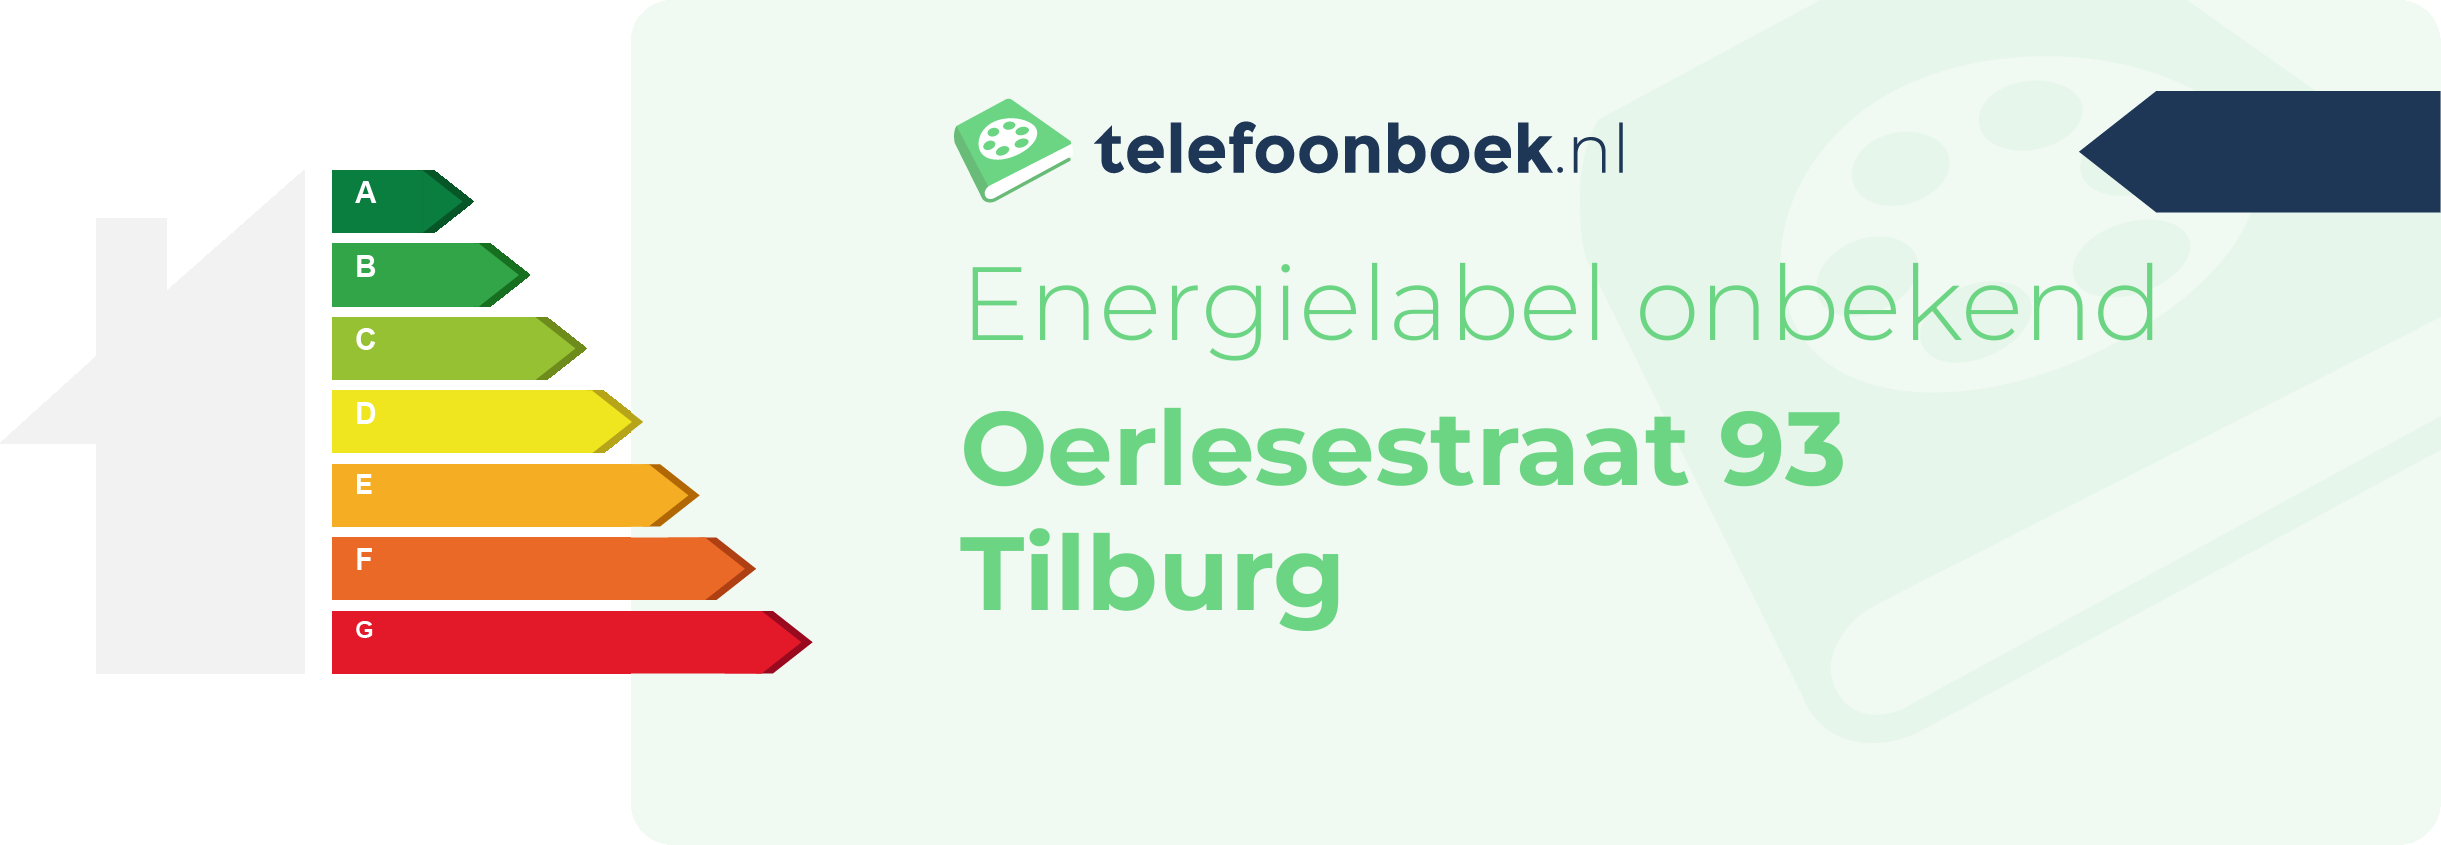 Energielabel Oerlesestraat 93 Tilburg